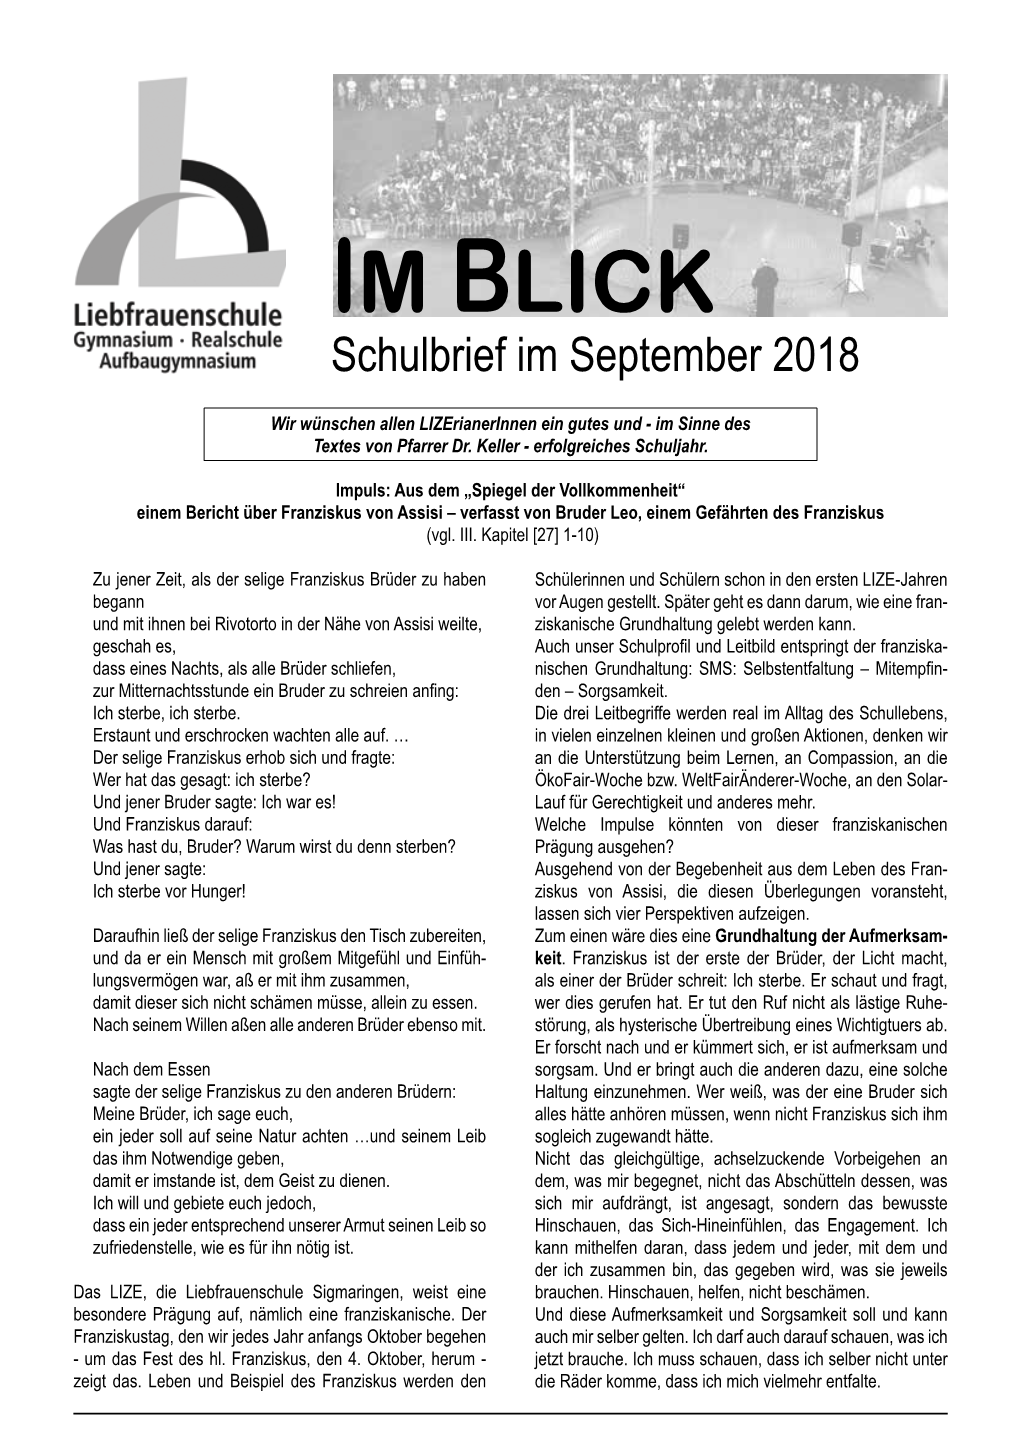 IM BLICK Schulbrief Im September 2018